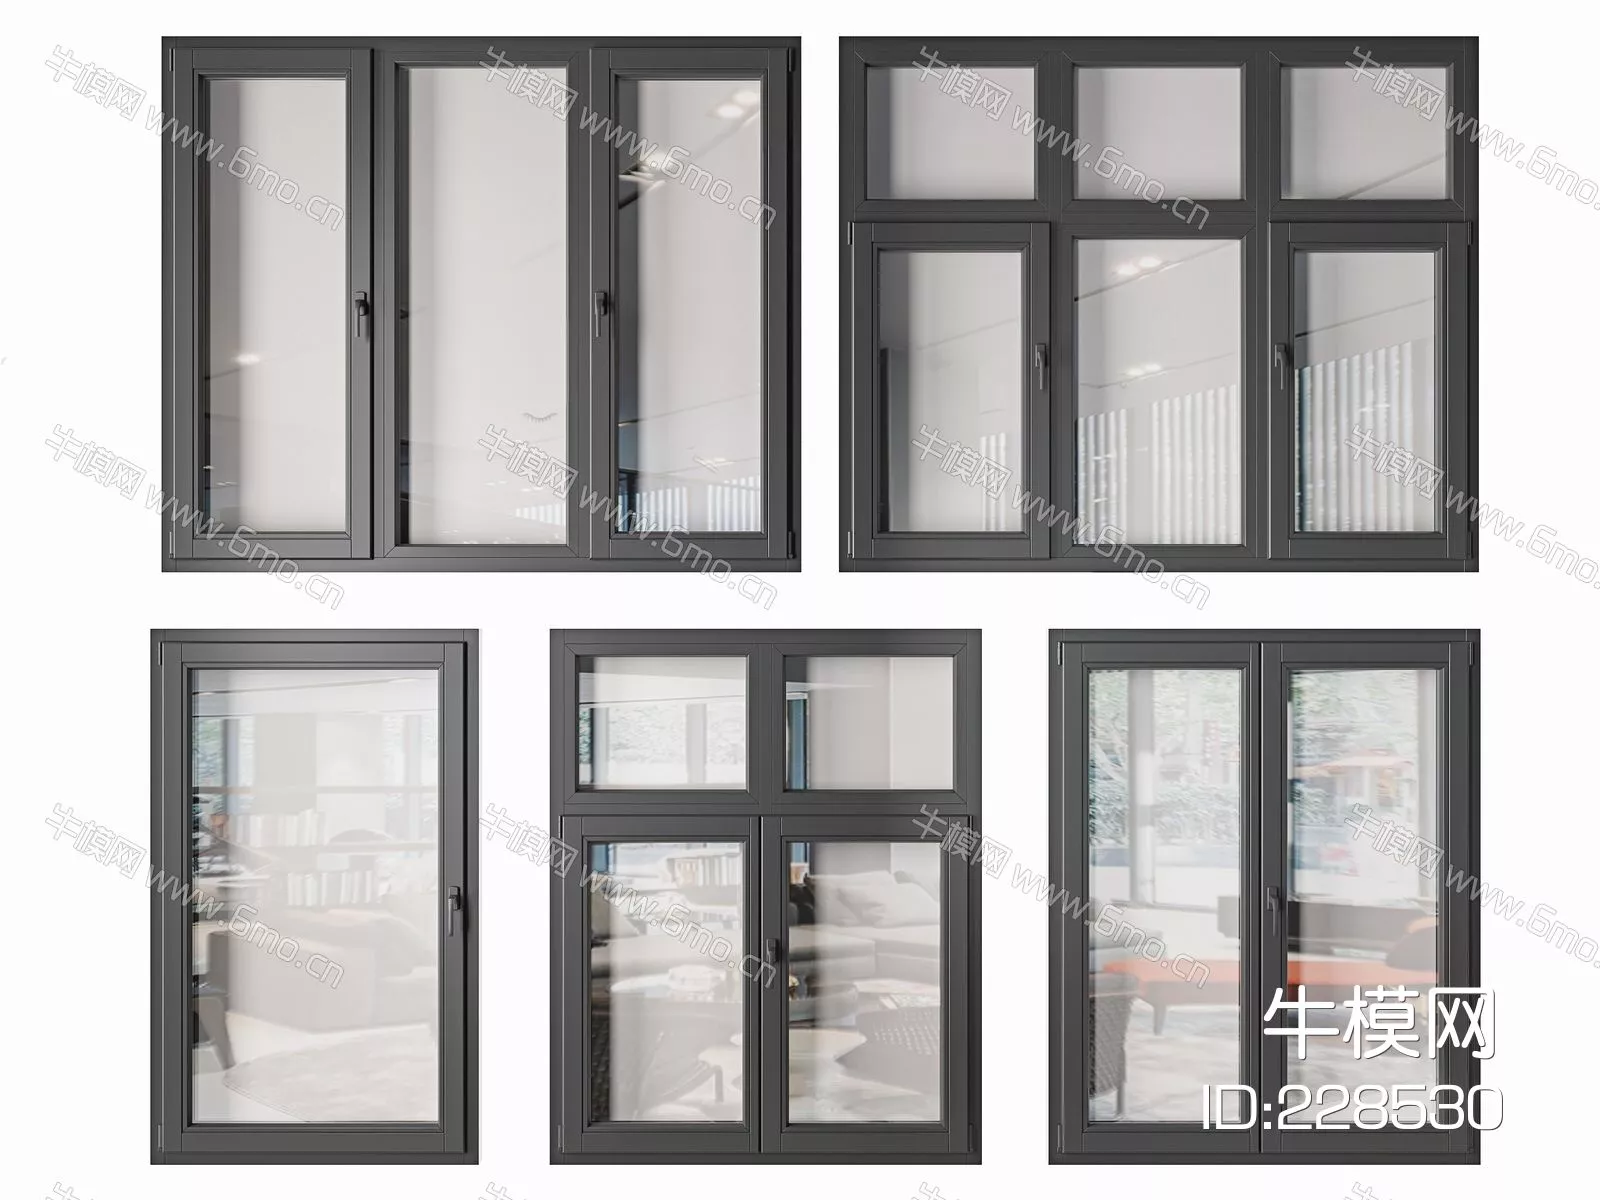 MODERN DOOR AND WINDOWS - SKETCHUP 3D MODEL - VRAY - 228530